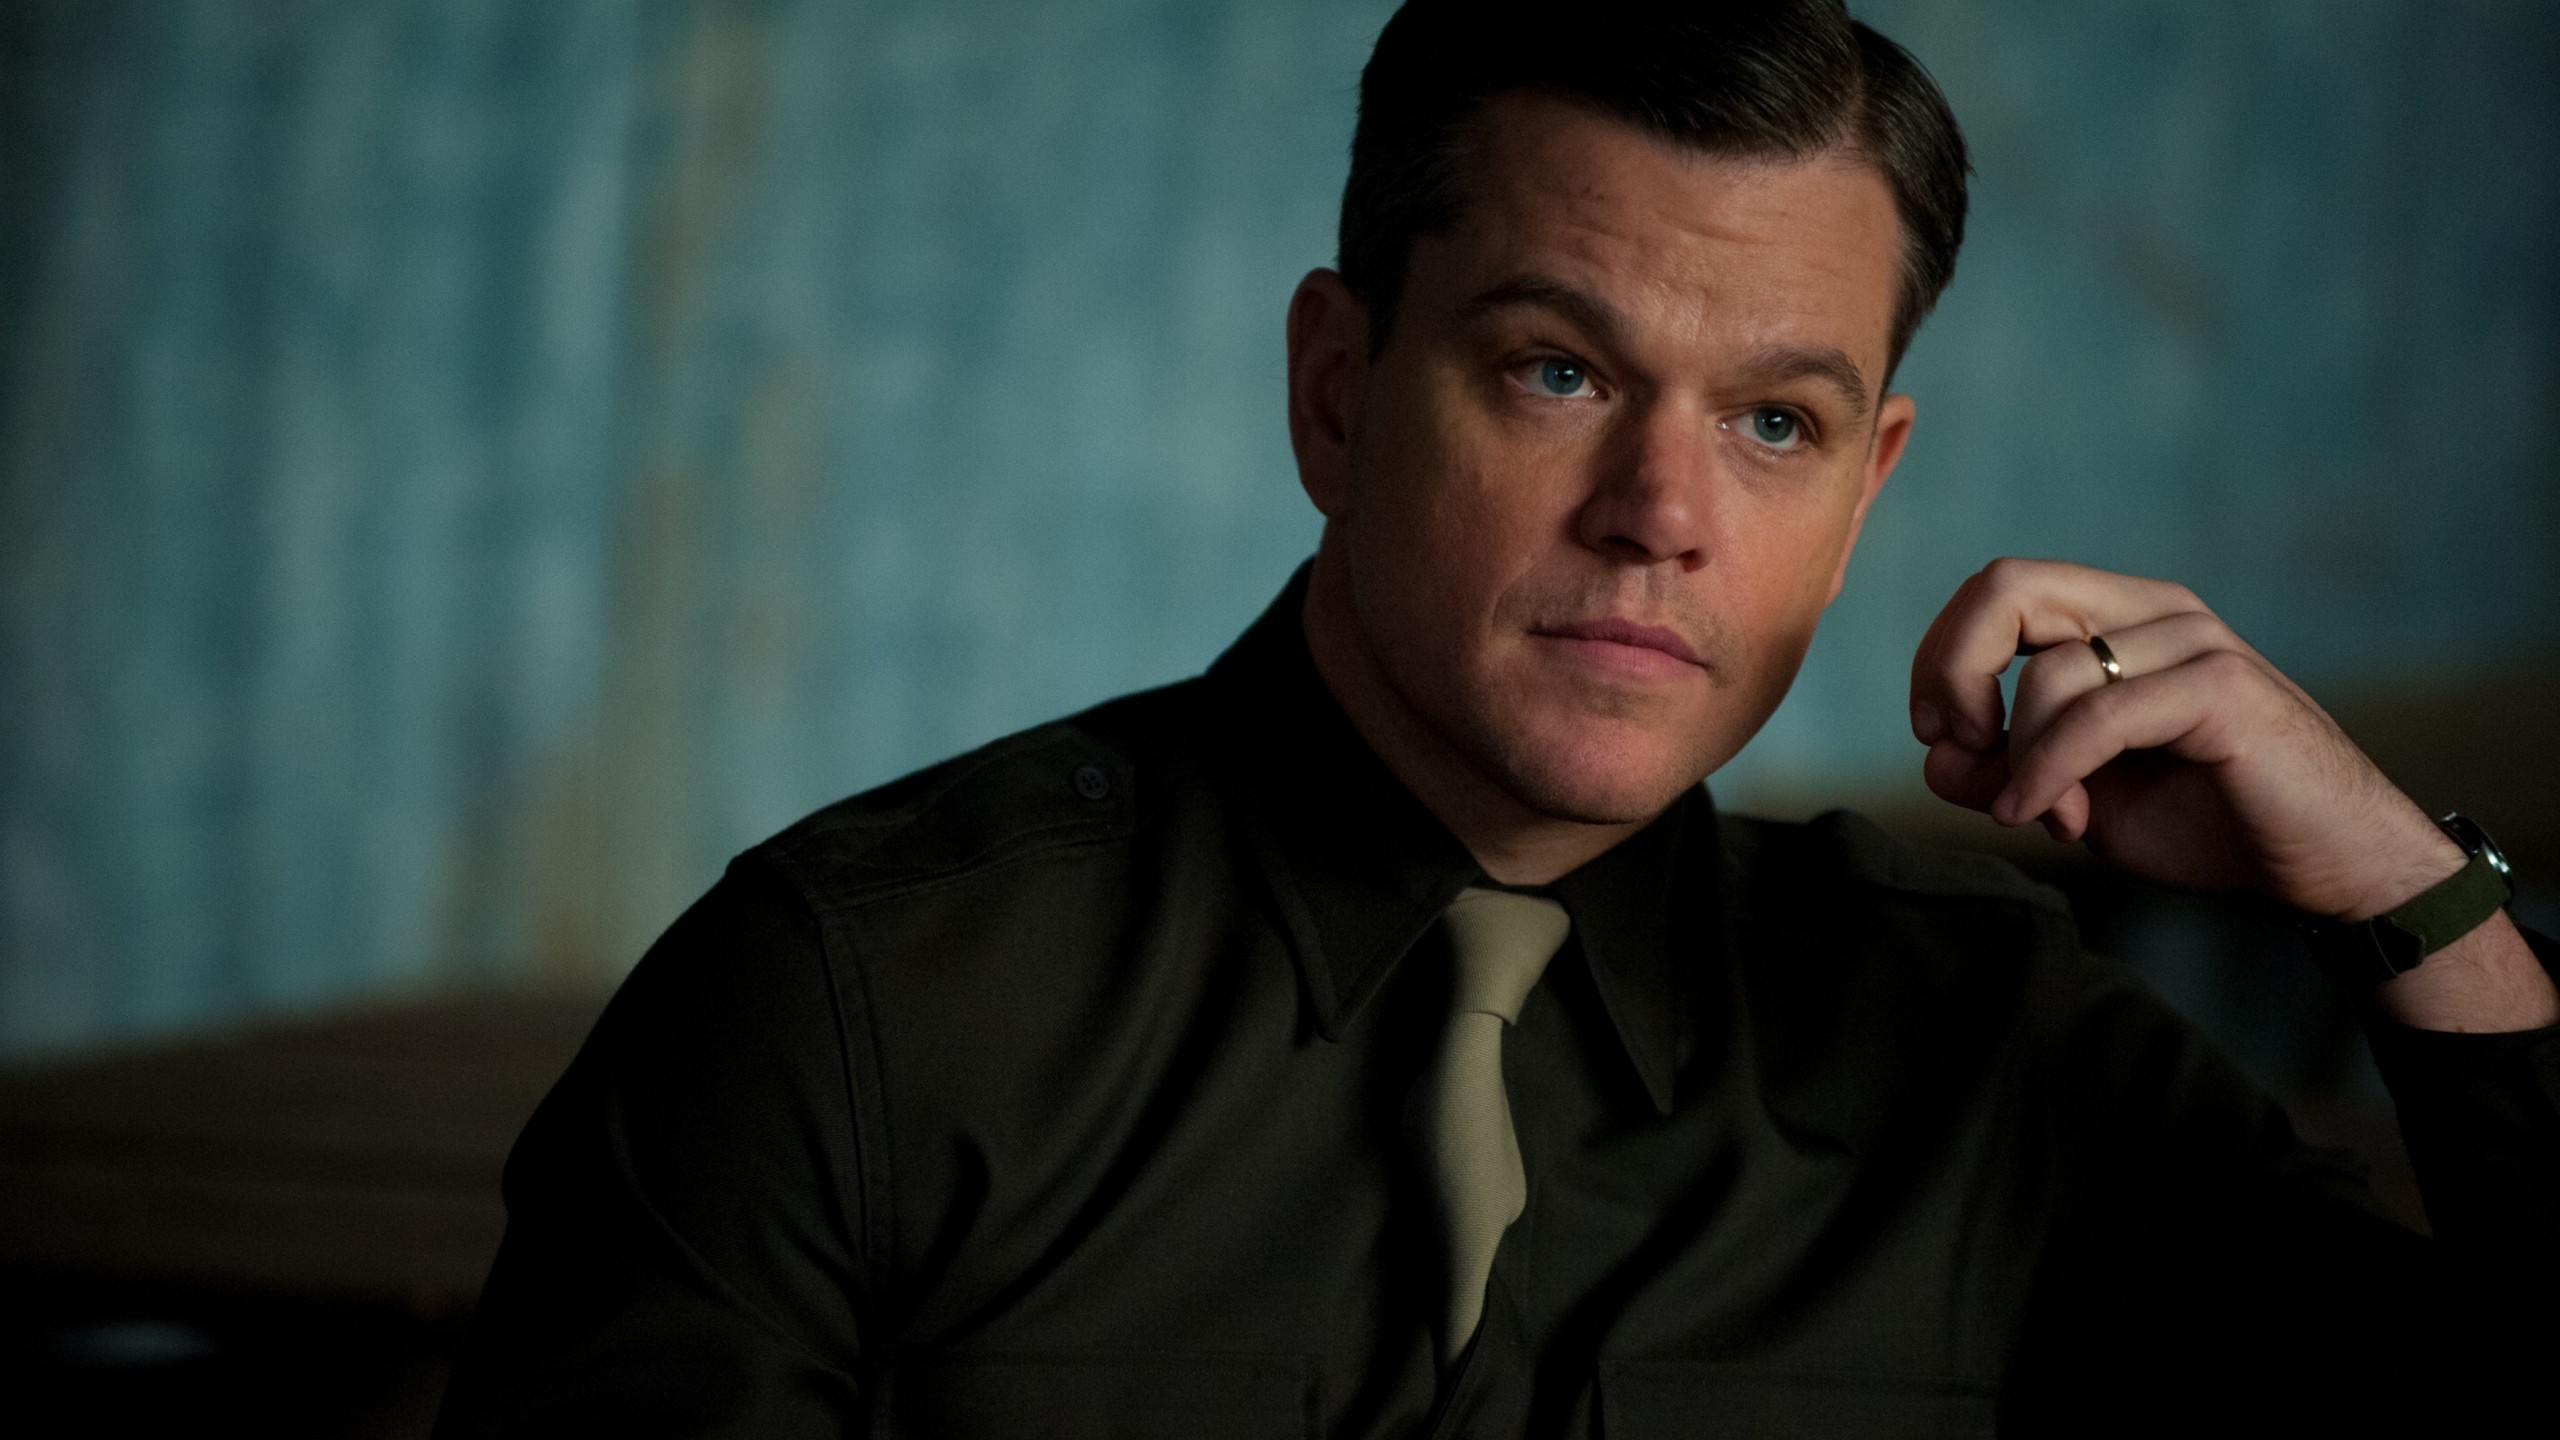 Matt Damon Portrait for 2560x1440 HDTV resolution